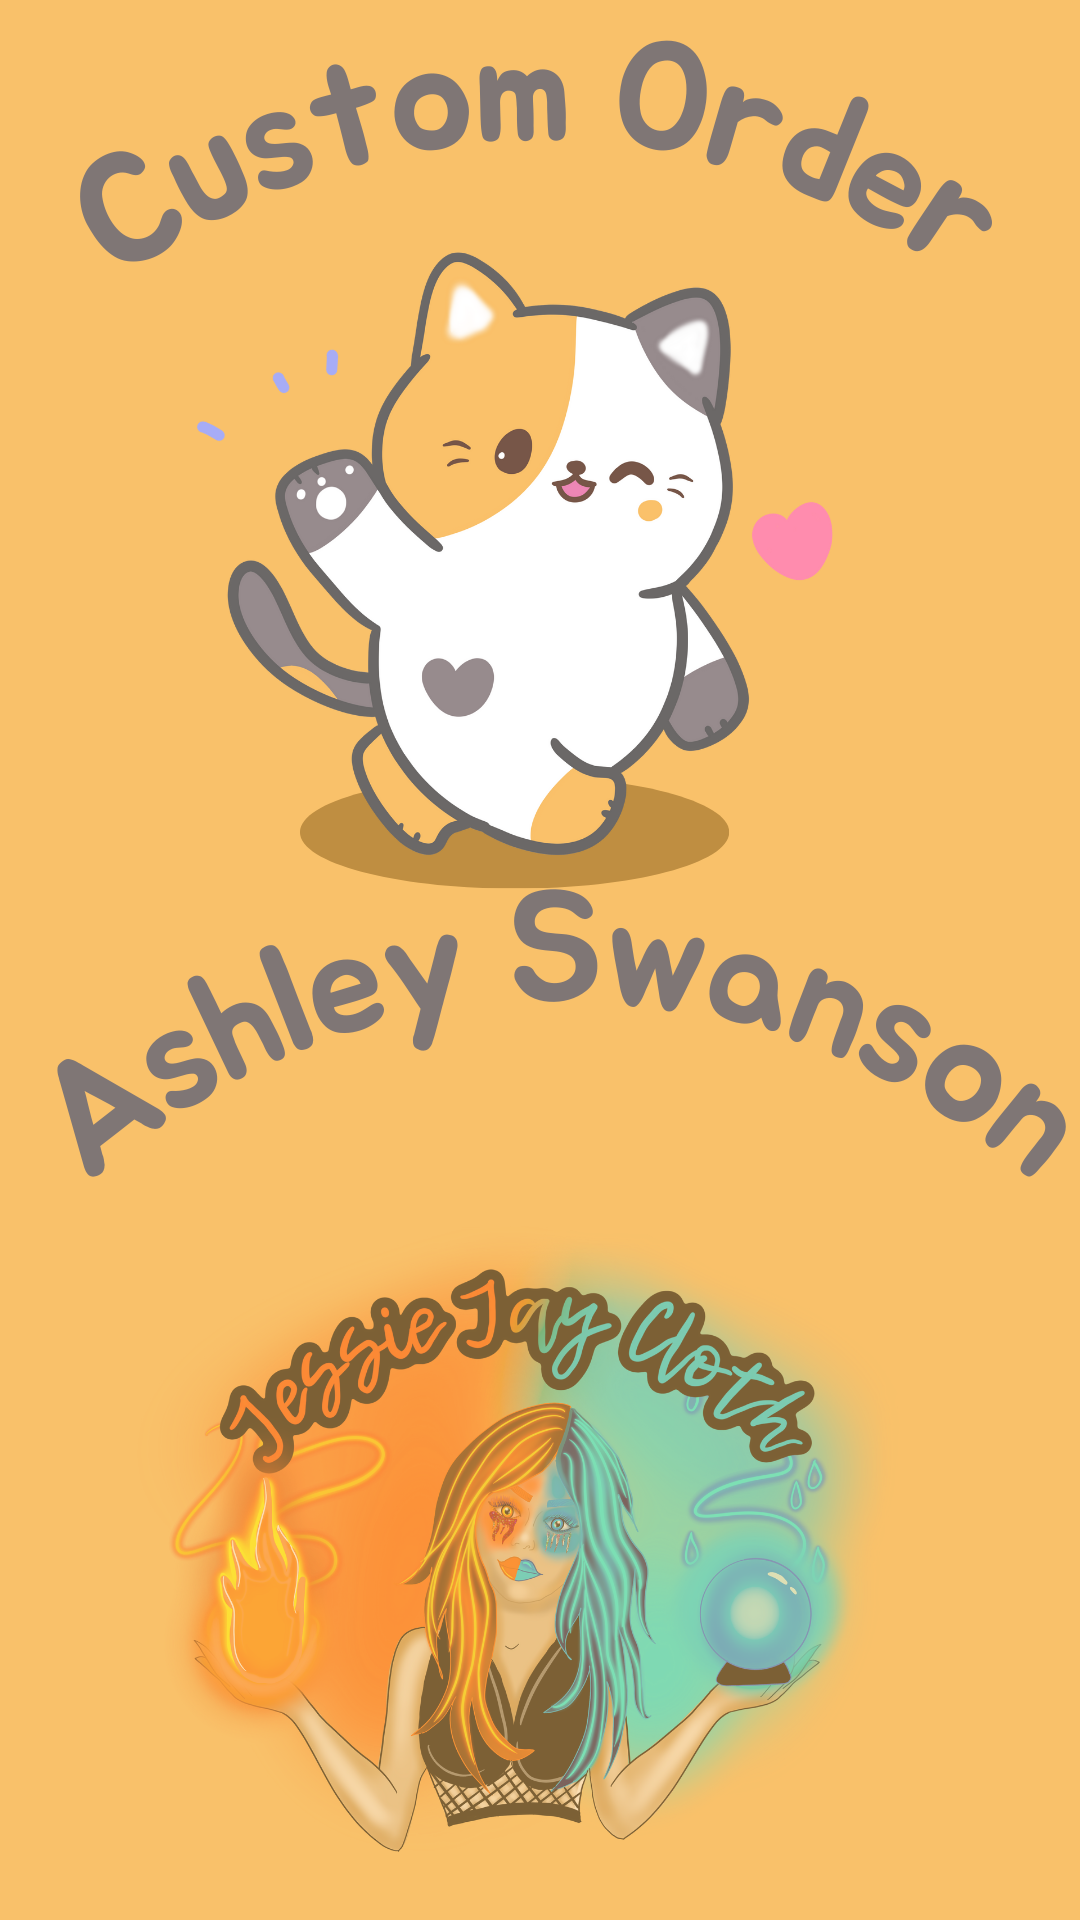 Custom Order Ashley Swanson